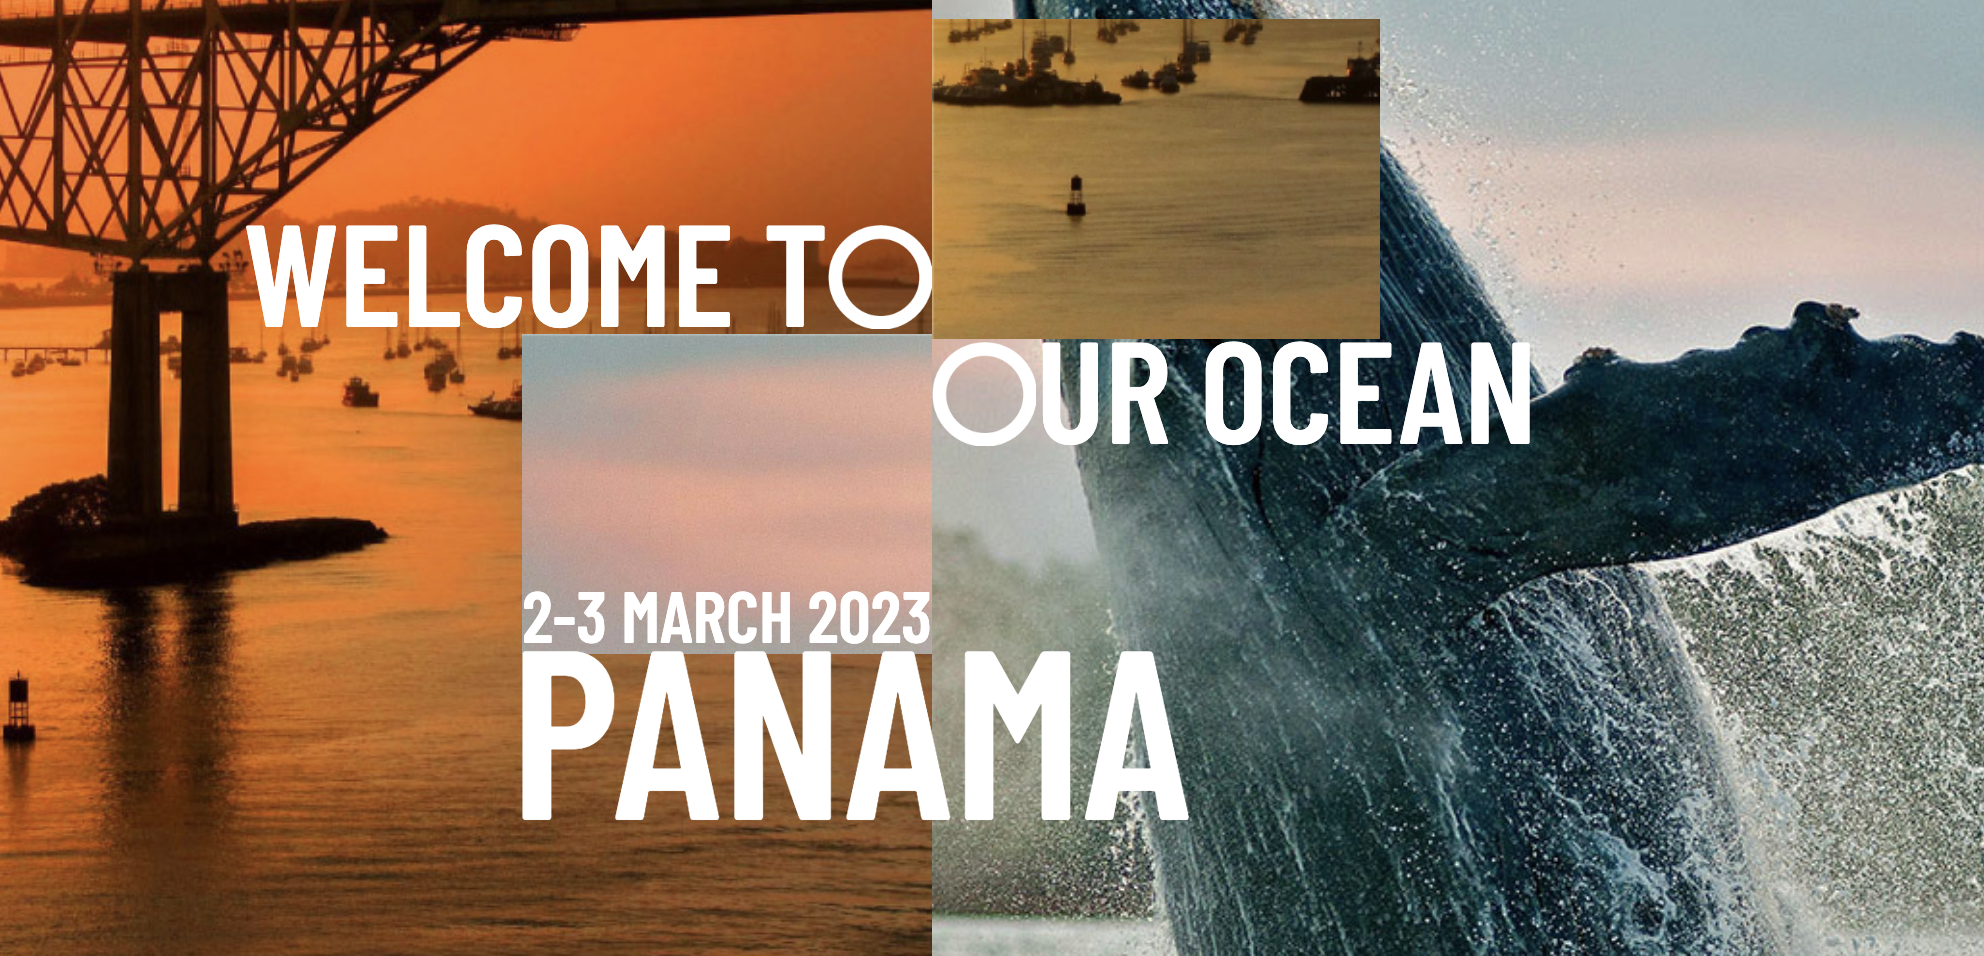 Comienza la conferencia ‘Our Ocean’ en Panamá: “La pesca ilegal es un problema en aumento en todo el mundo”